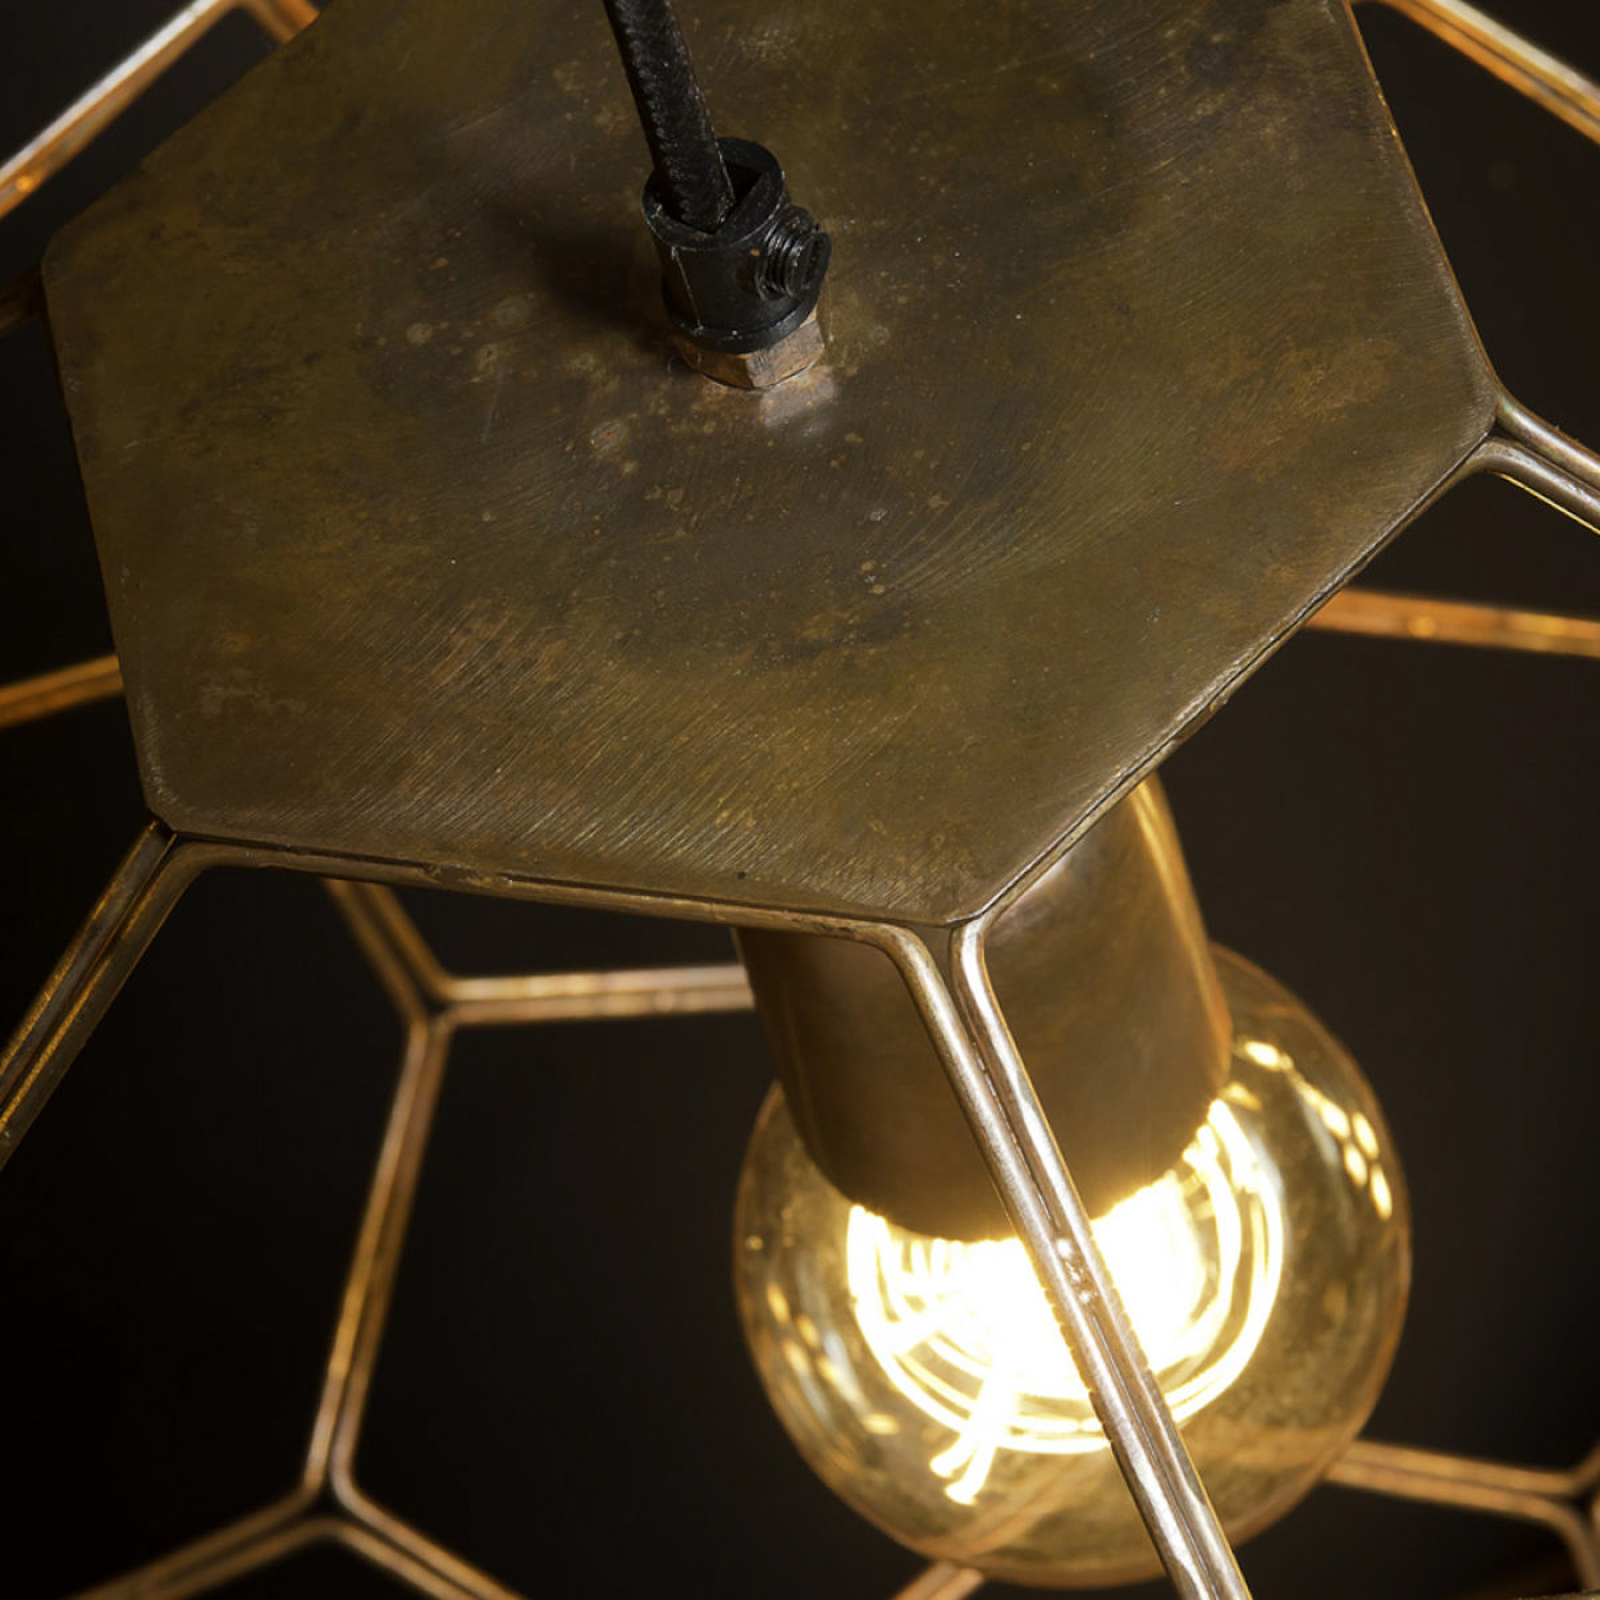 Het gaat om hanglamp Romi Marrakesh, Ø 35 cm